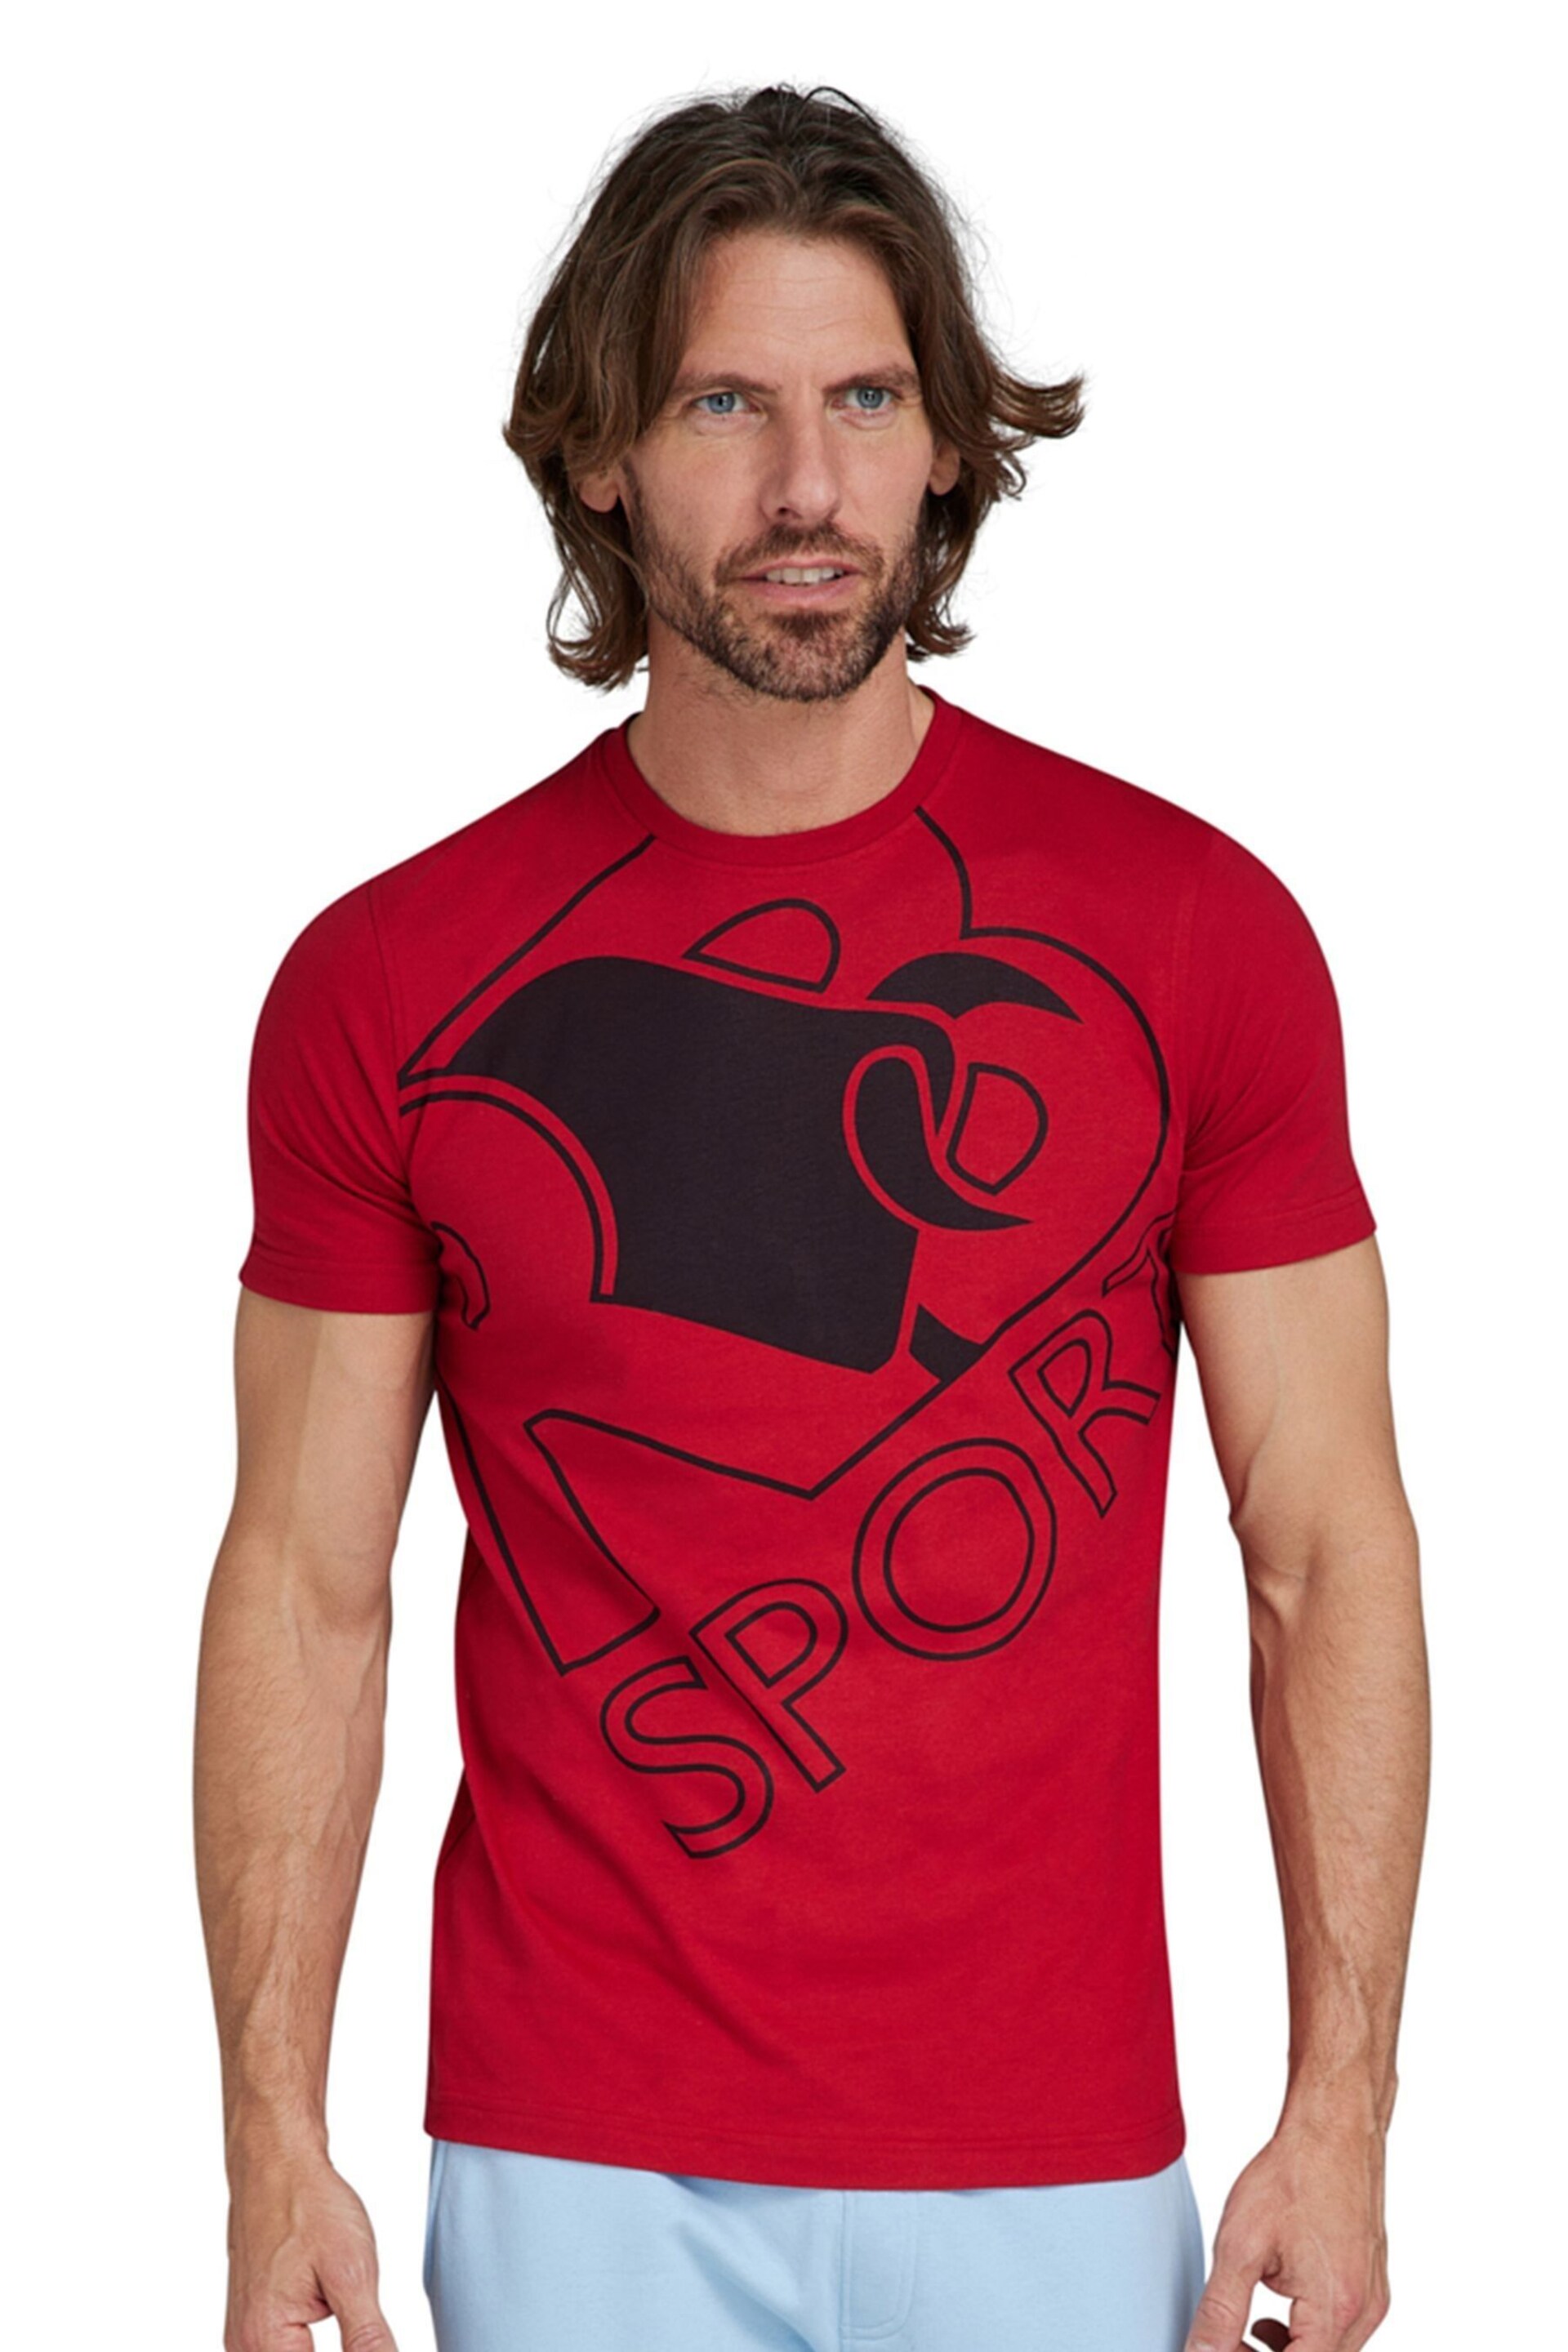 Raging Bull Red Sport Bull T-Shirt - Image 1 of 6